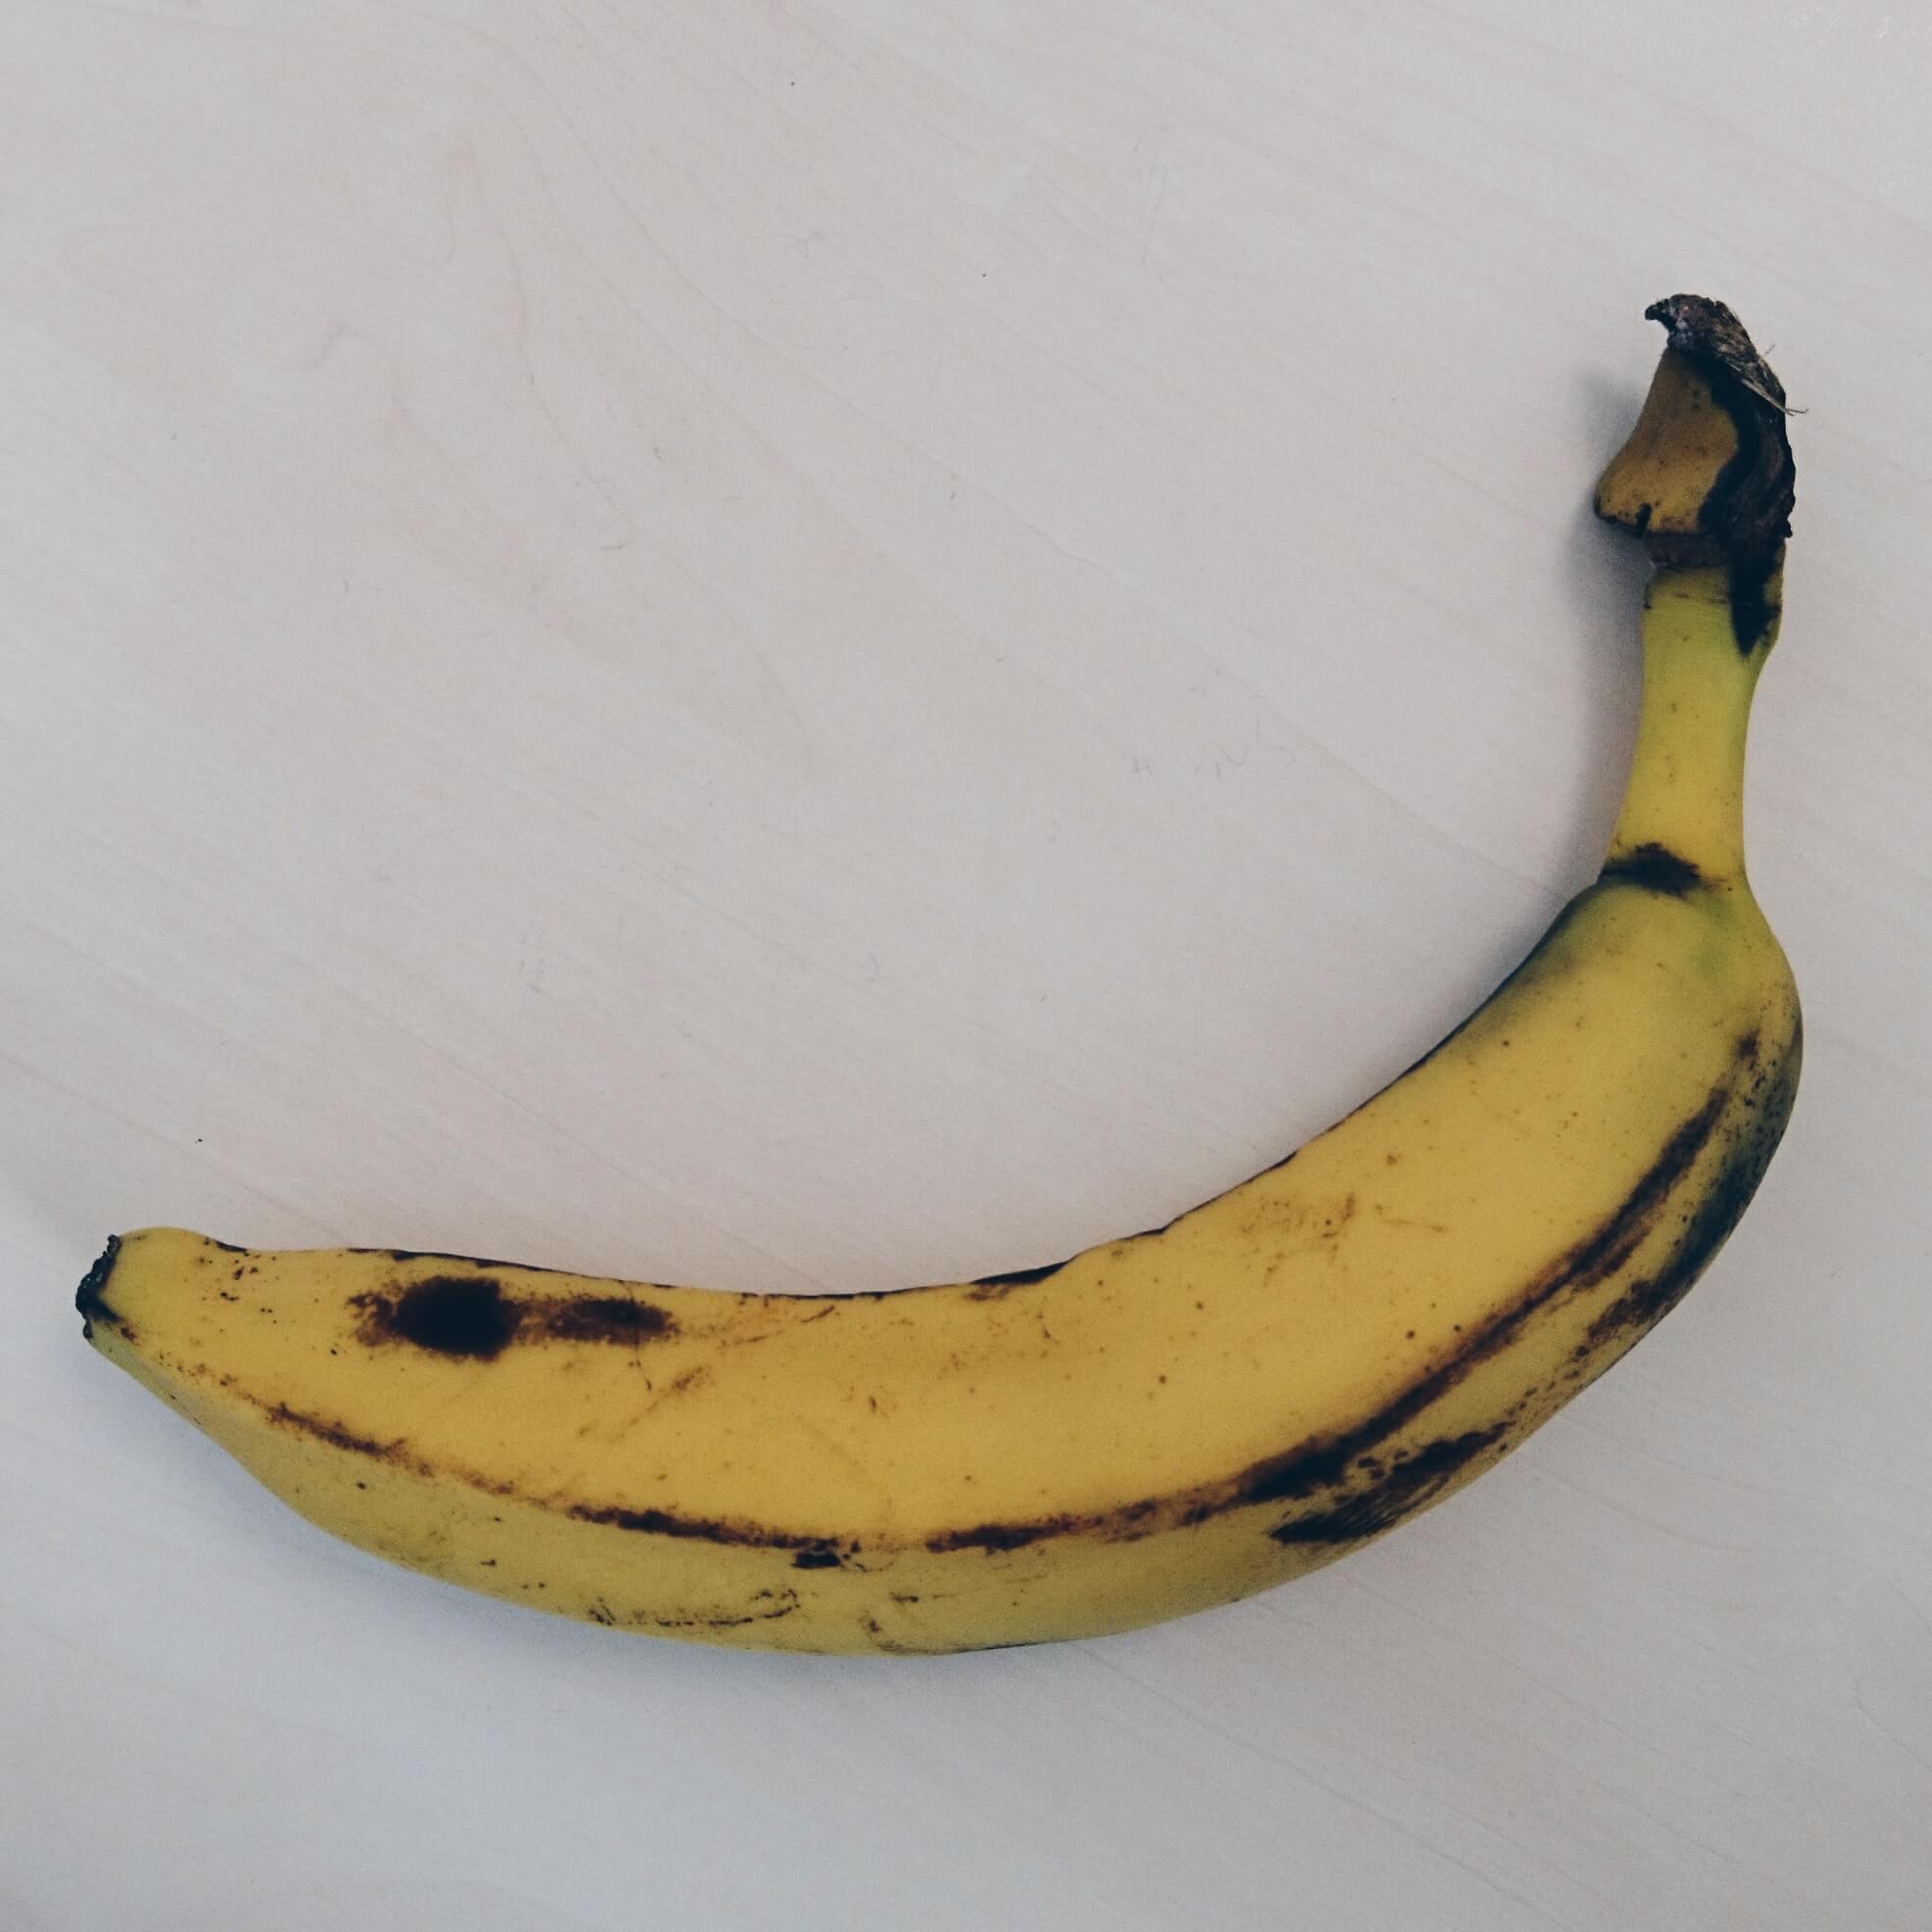 eine leicht angematschte Banane